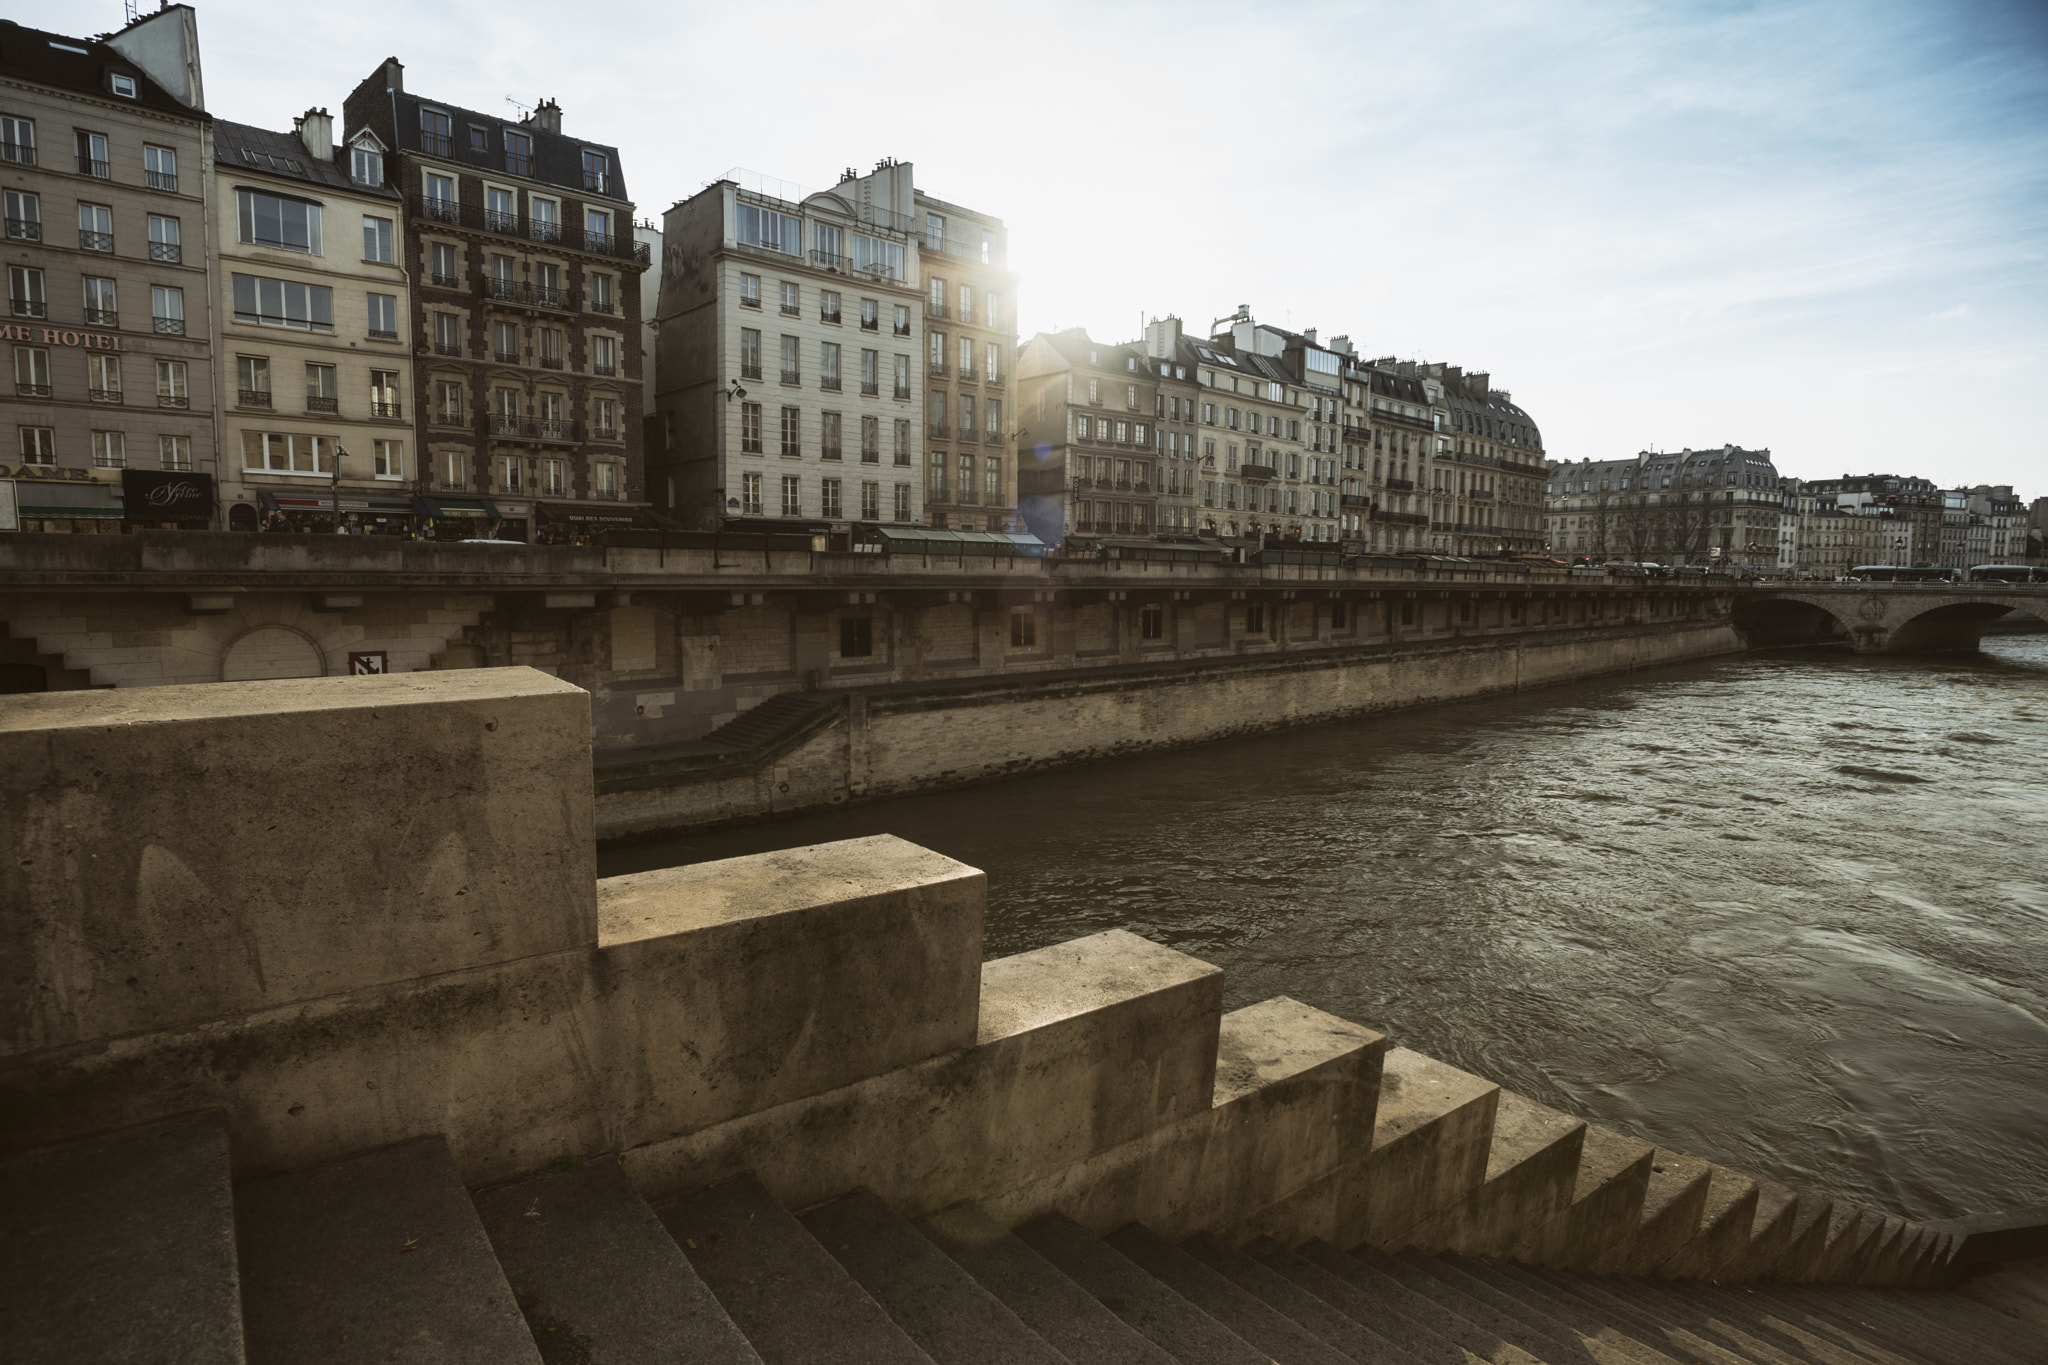 ZEISS Touit 12mm F2.8 sample photo. River seine, paris | france photography